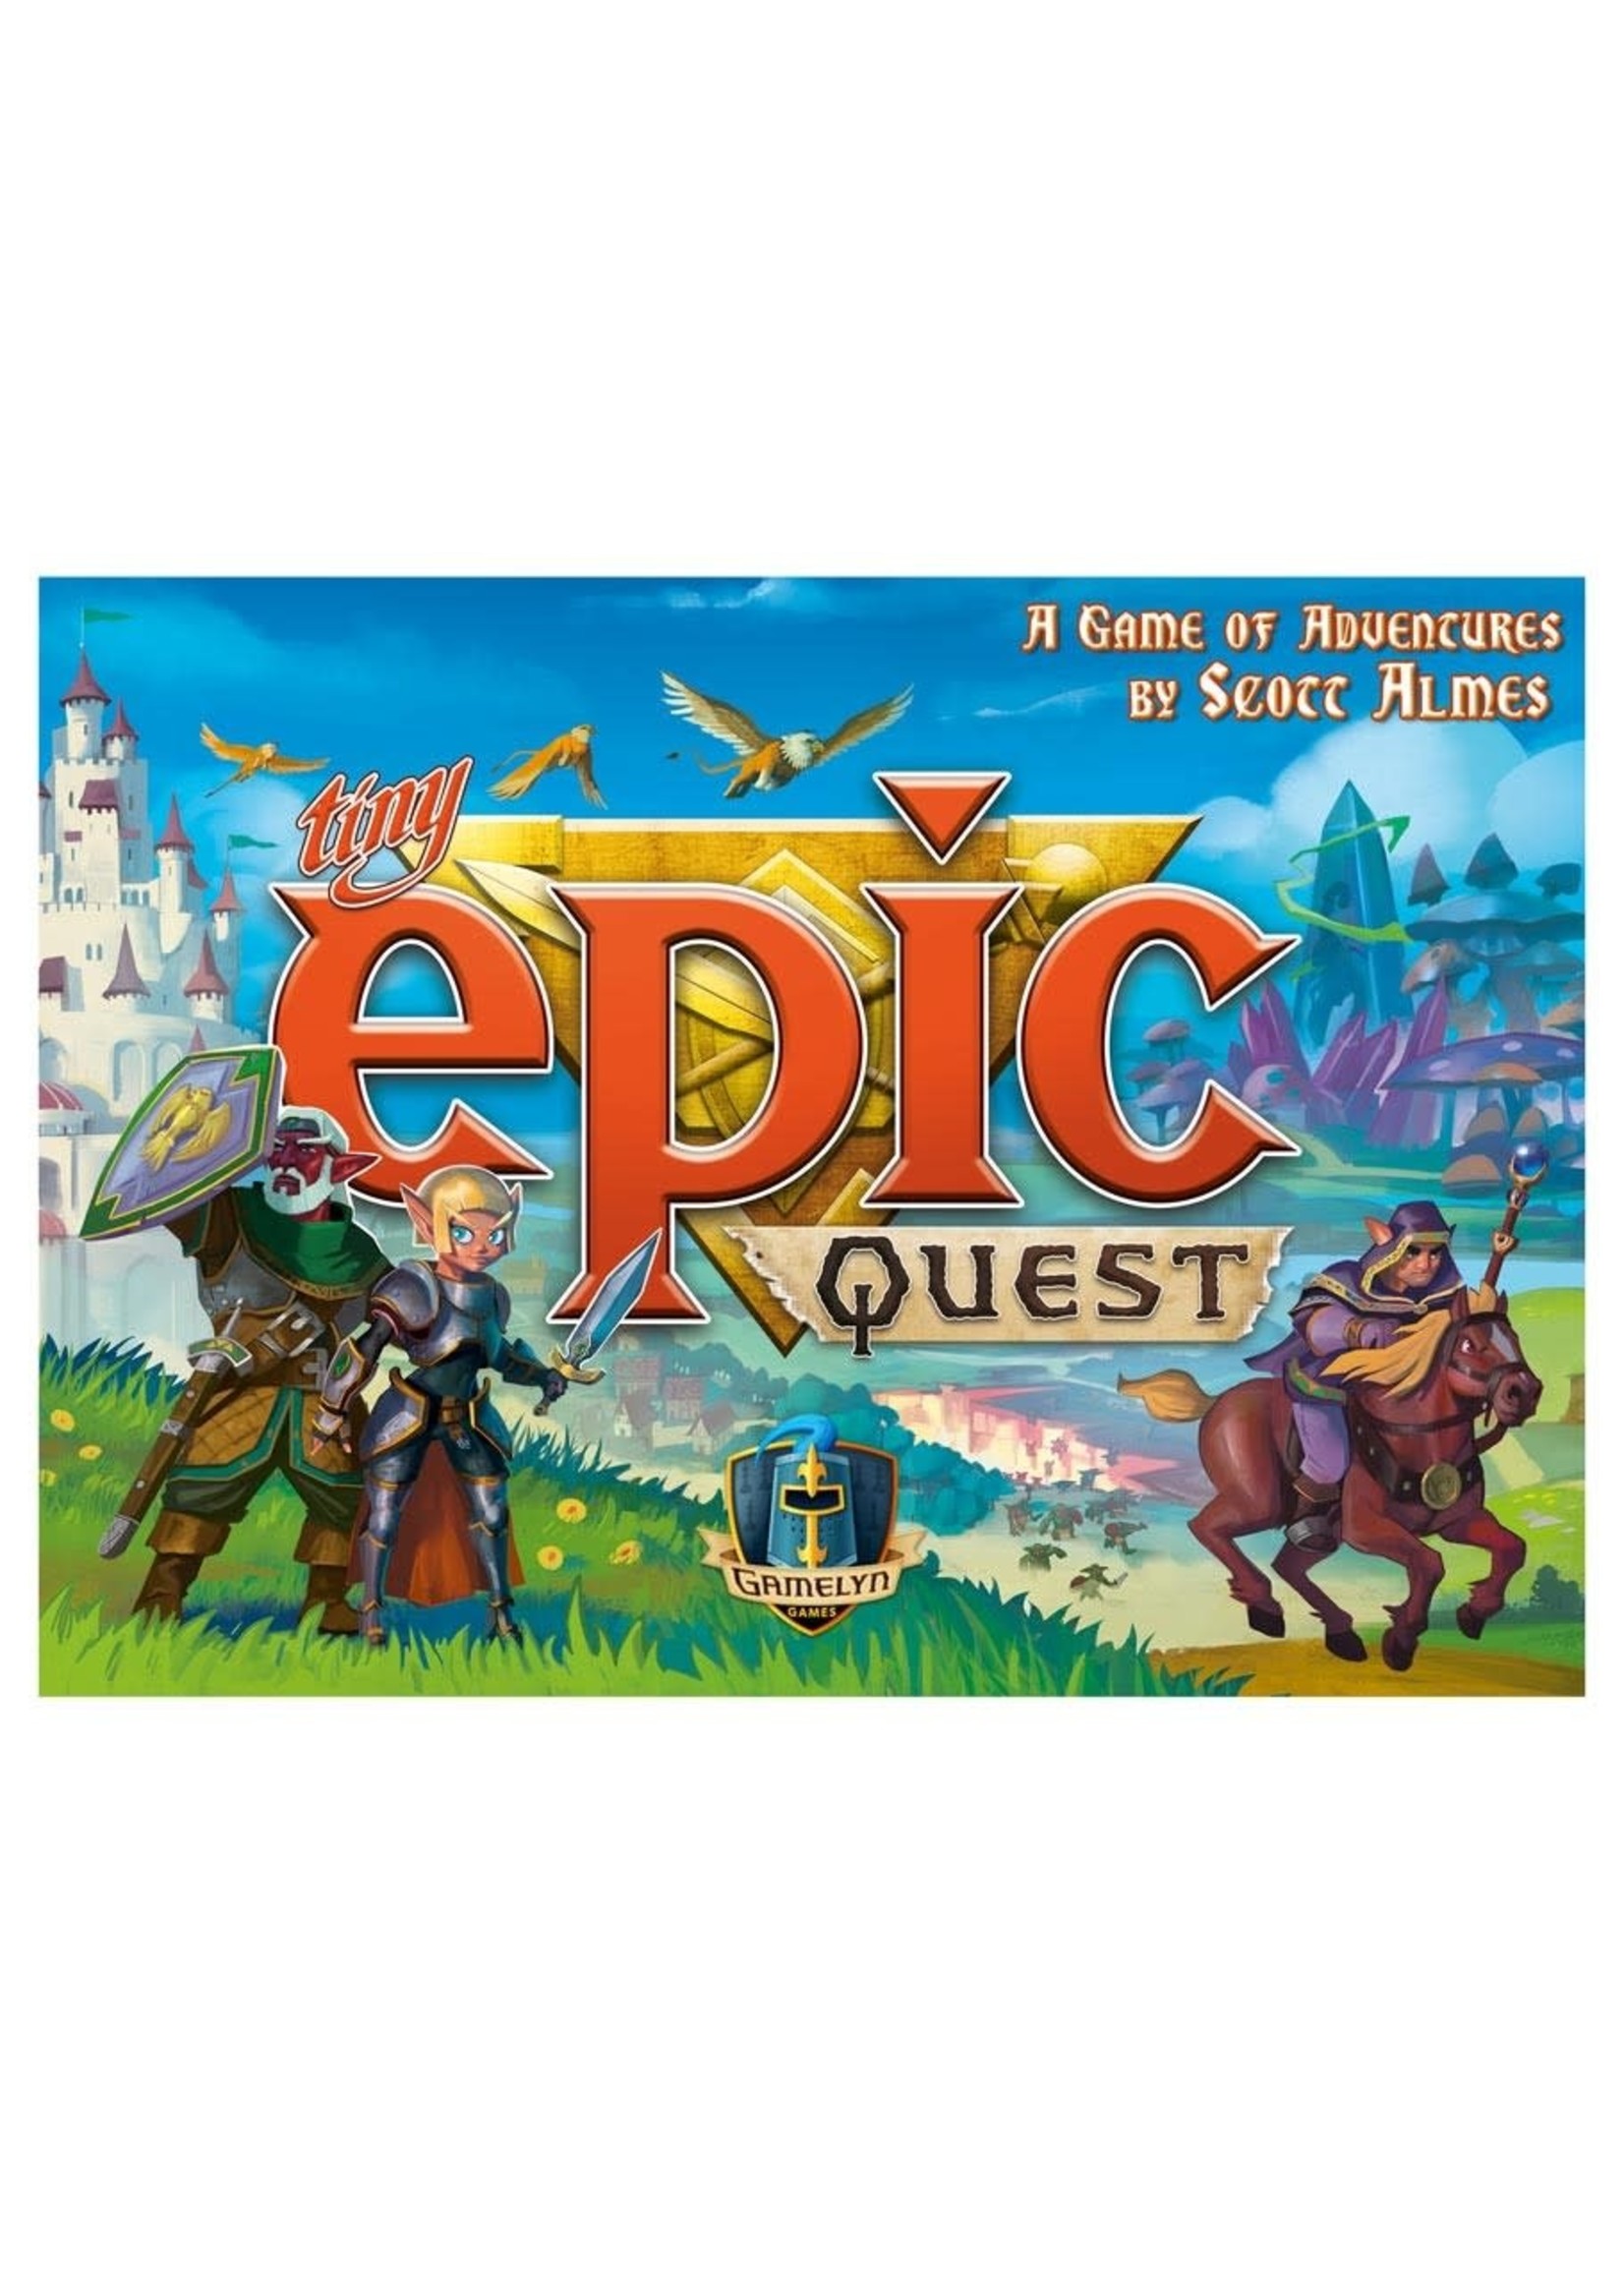 Rental RENTAL - Tiny Epic Quest 13.2oz